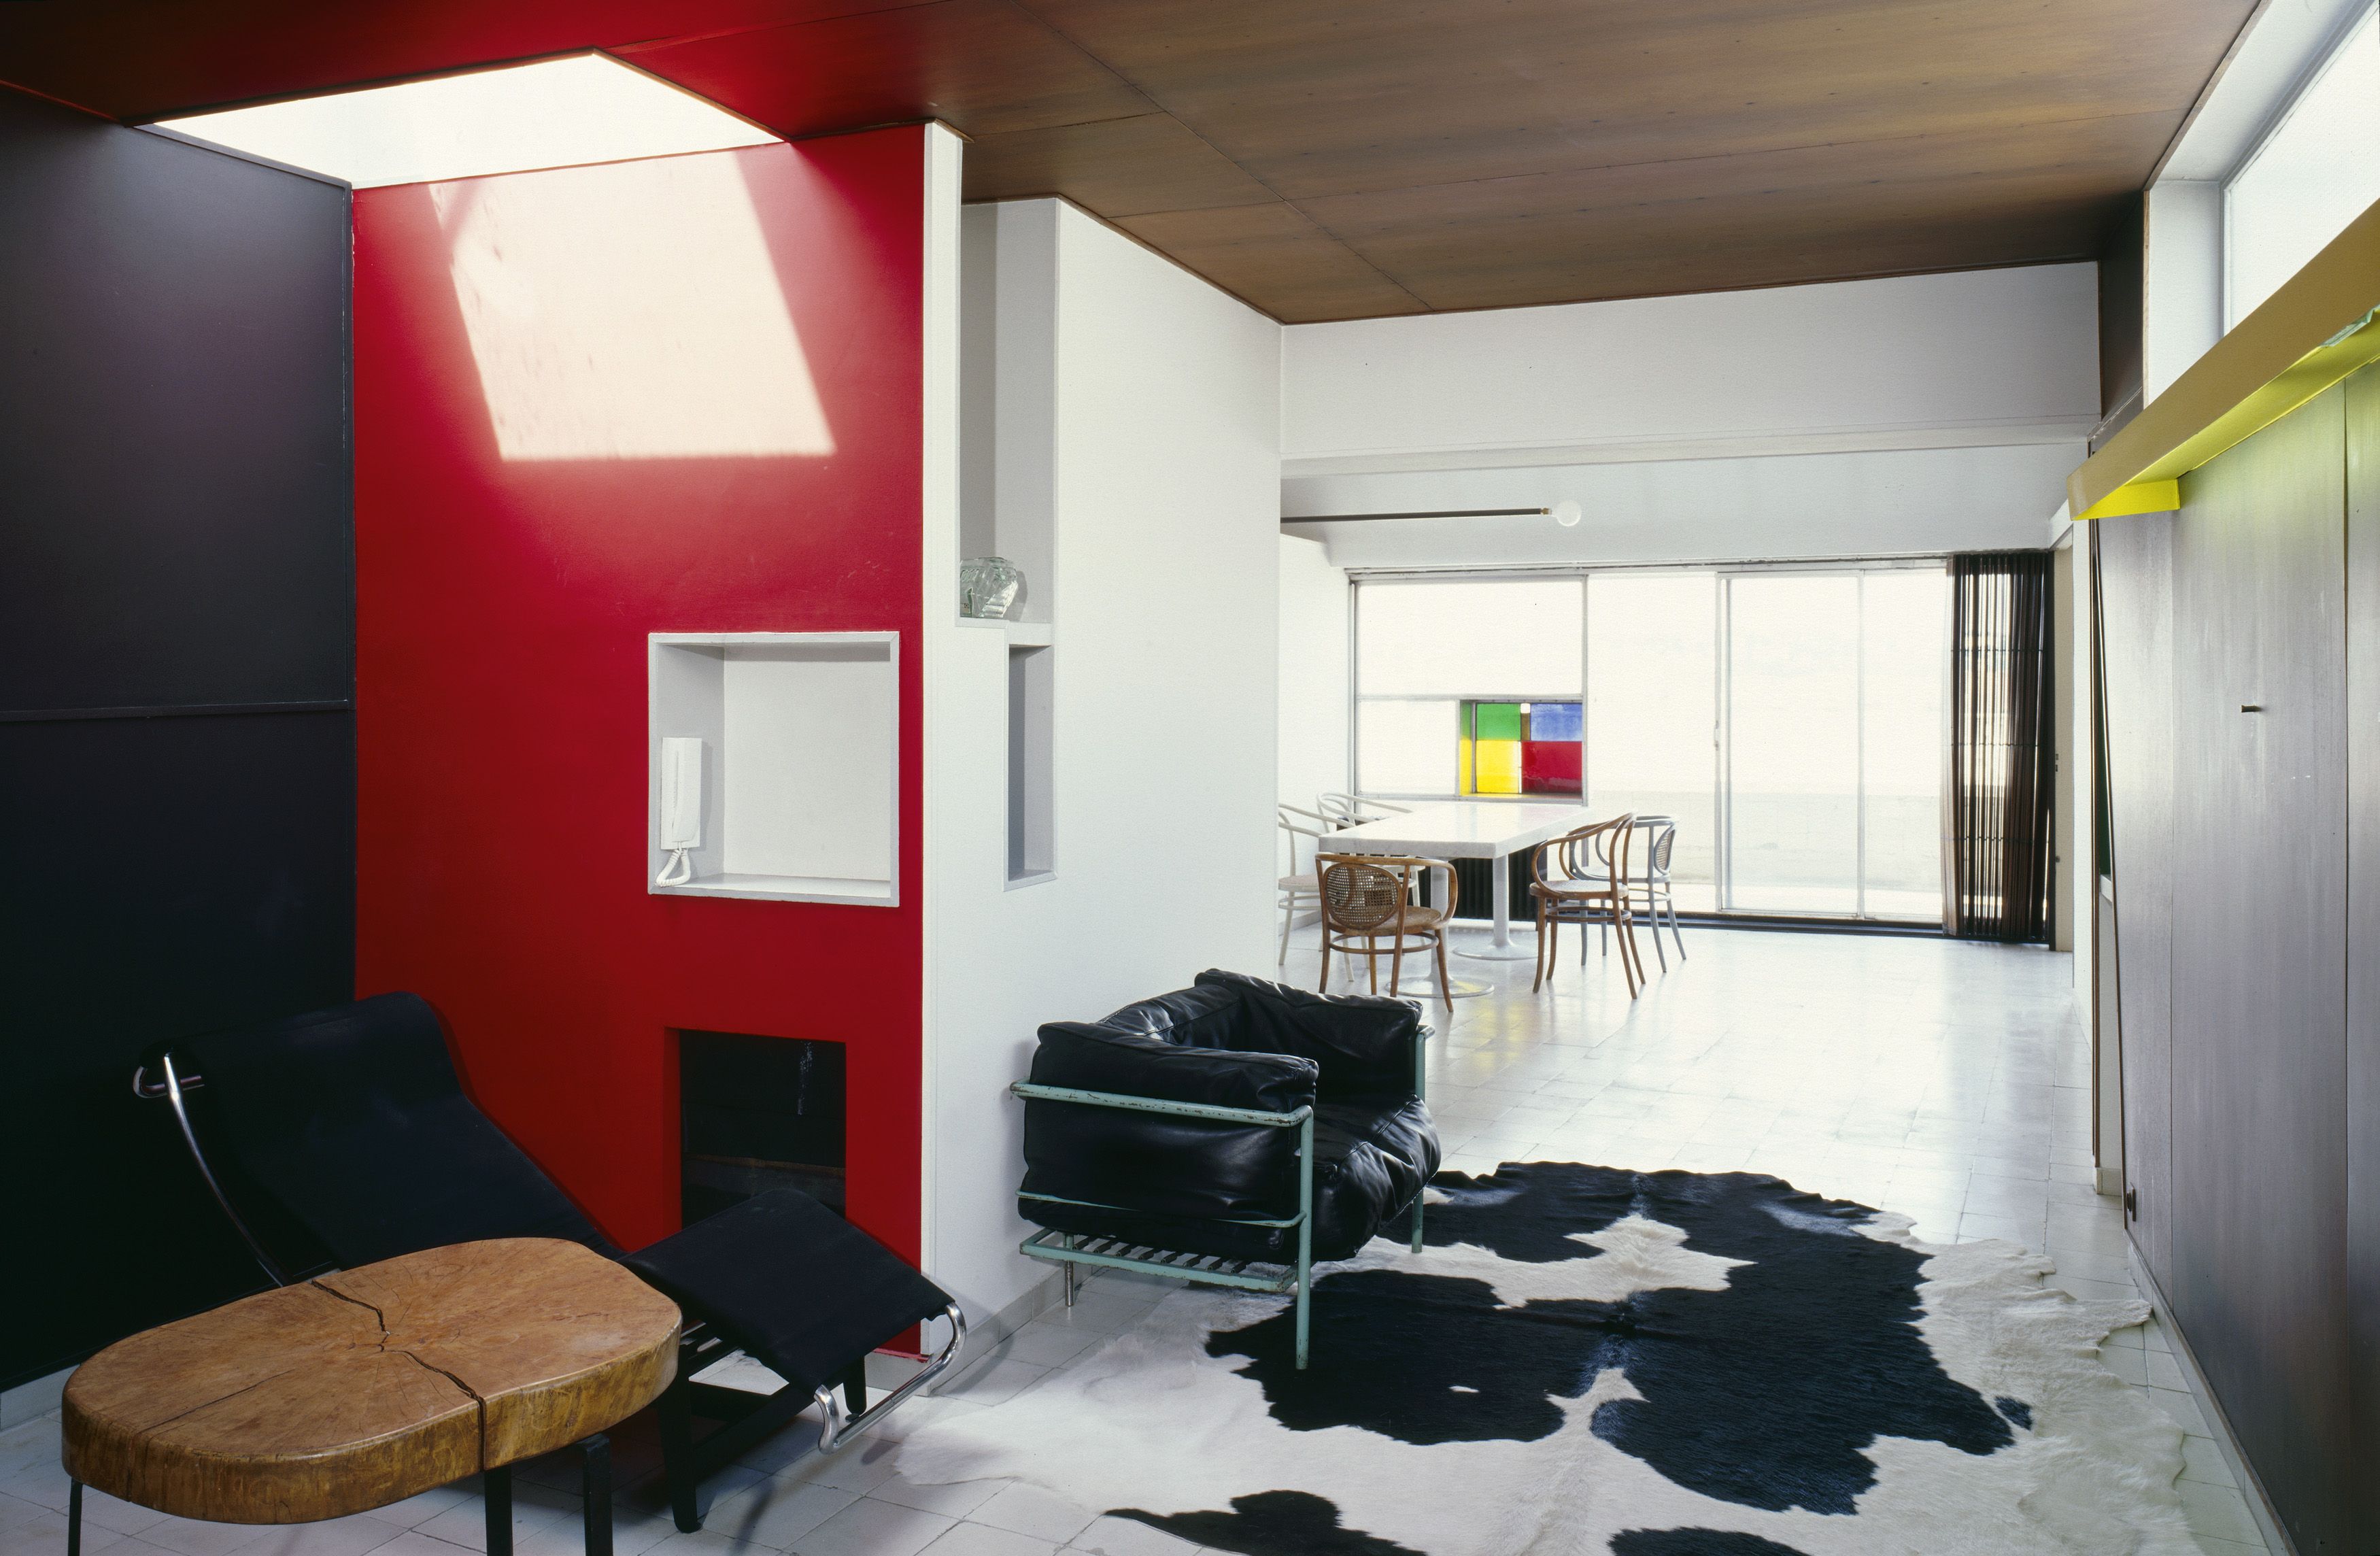 Nella casa/museo di Le Corbusier - immagine 12